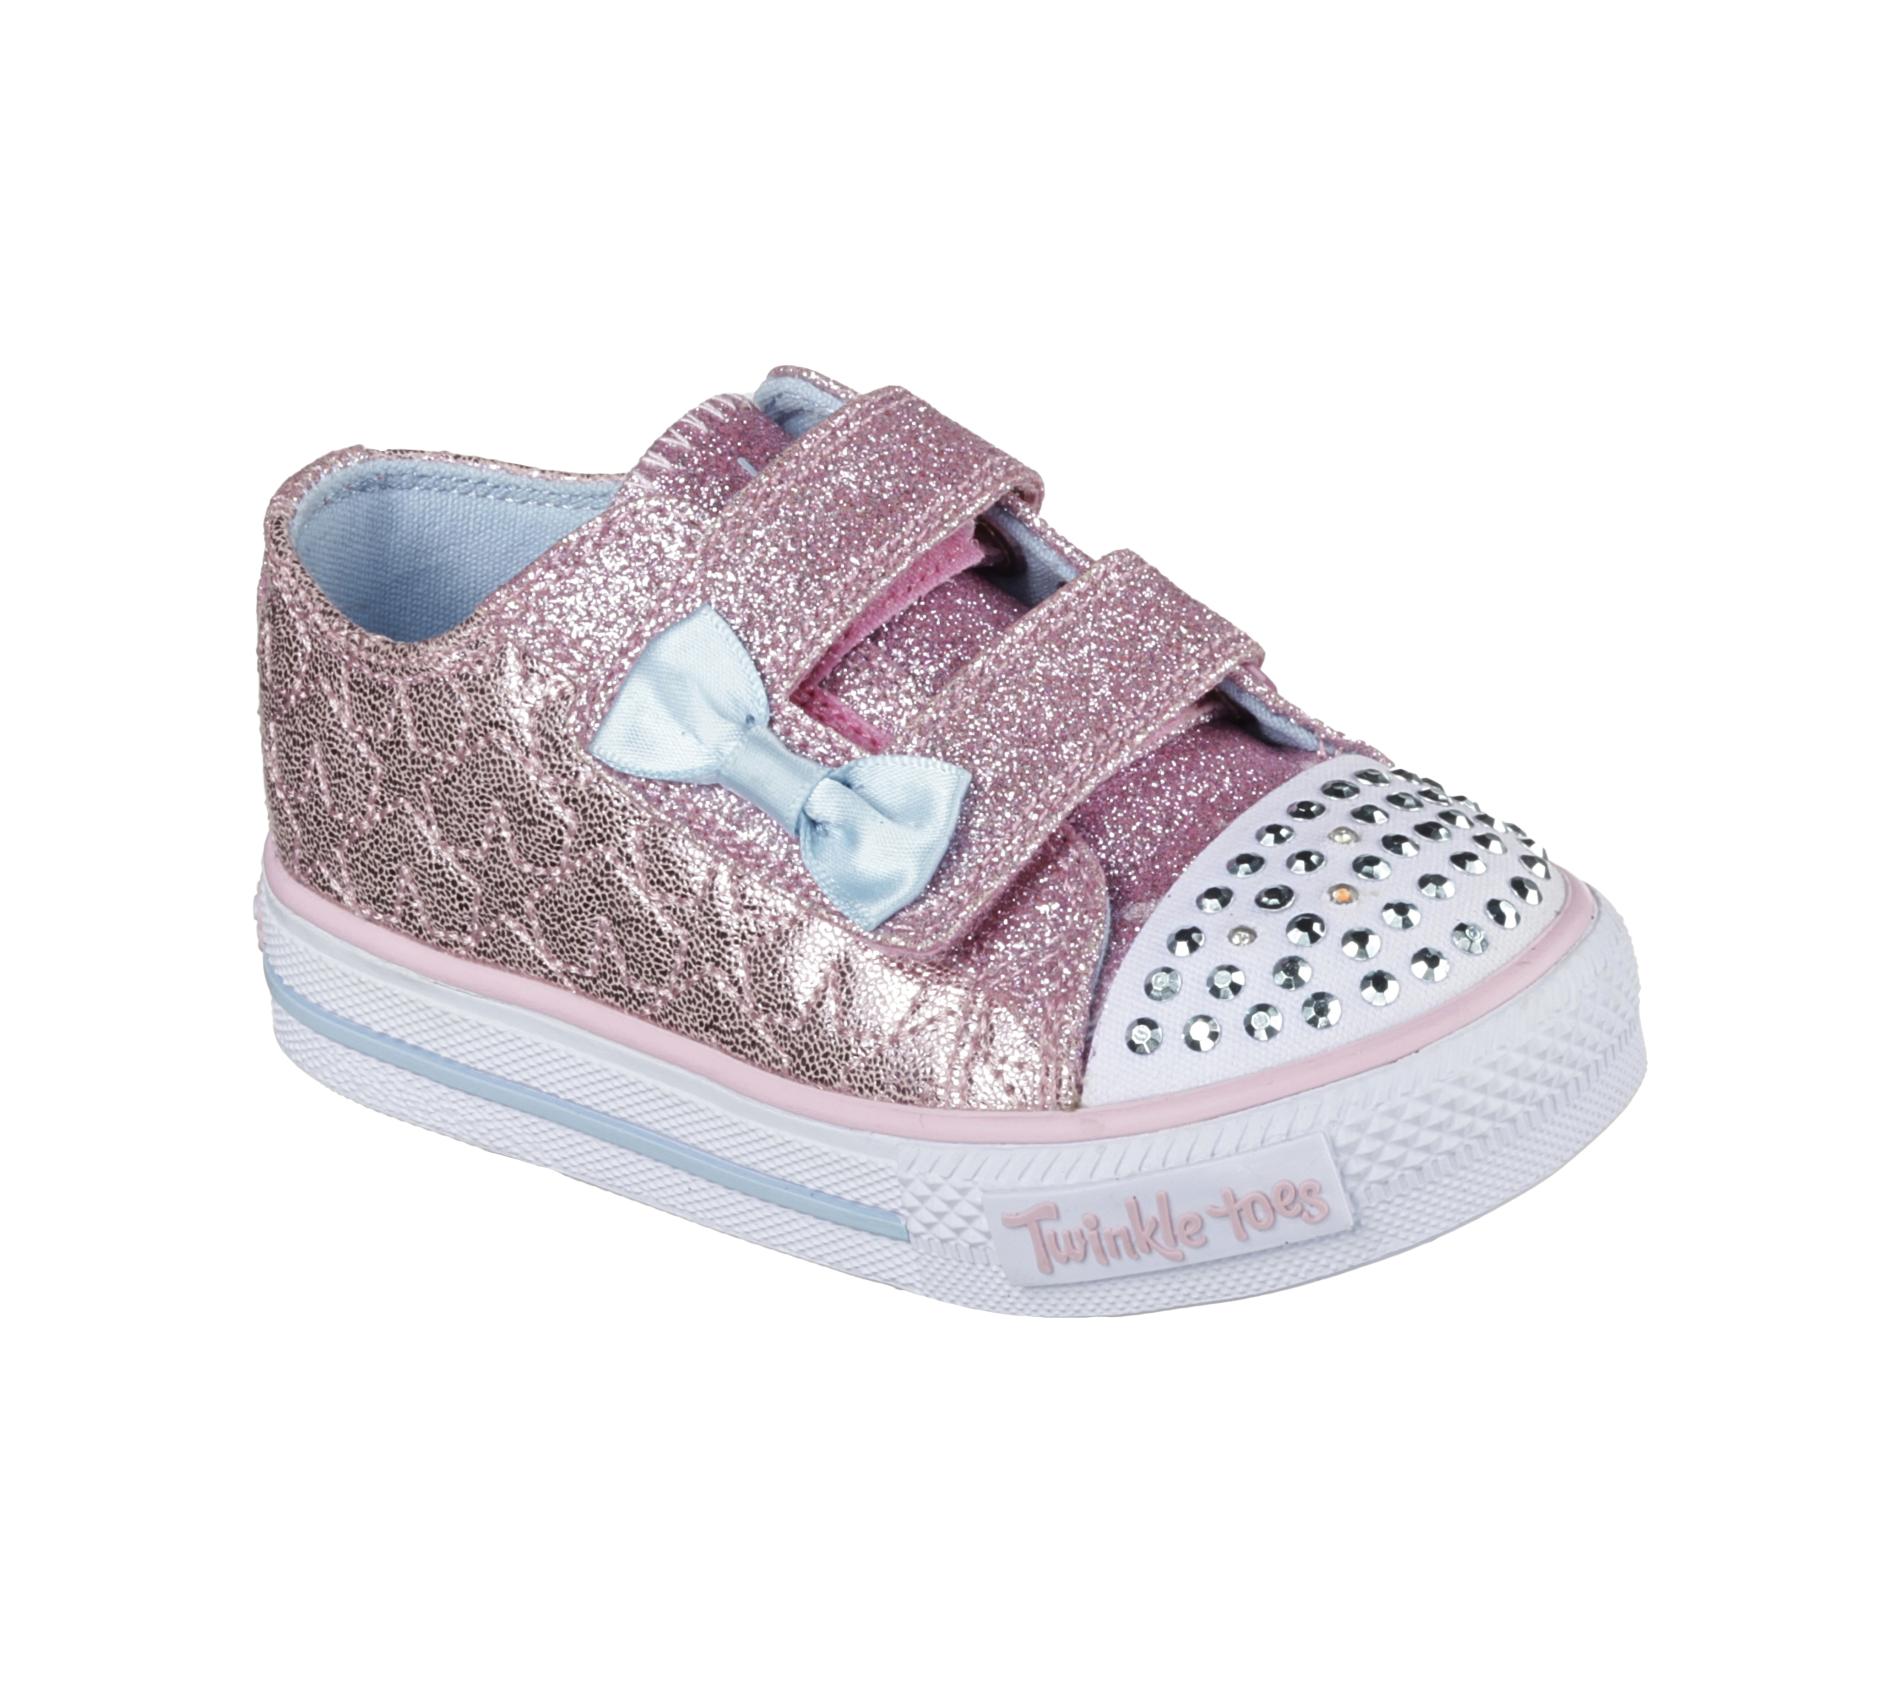 Skechers Toddler Girl's Twinkle Toes Shuffles Starlight Style Sneaker ...